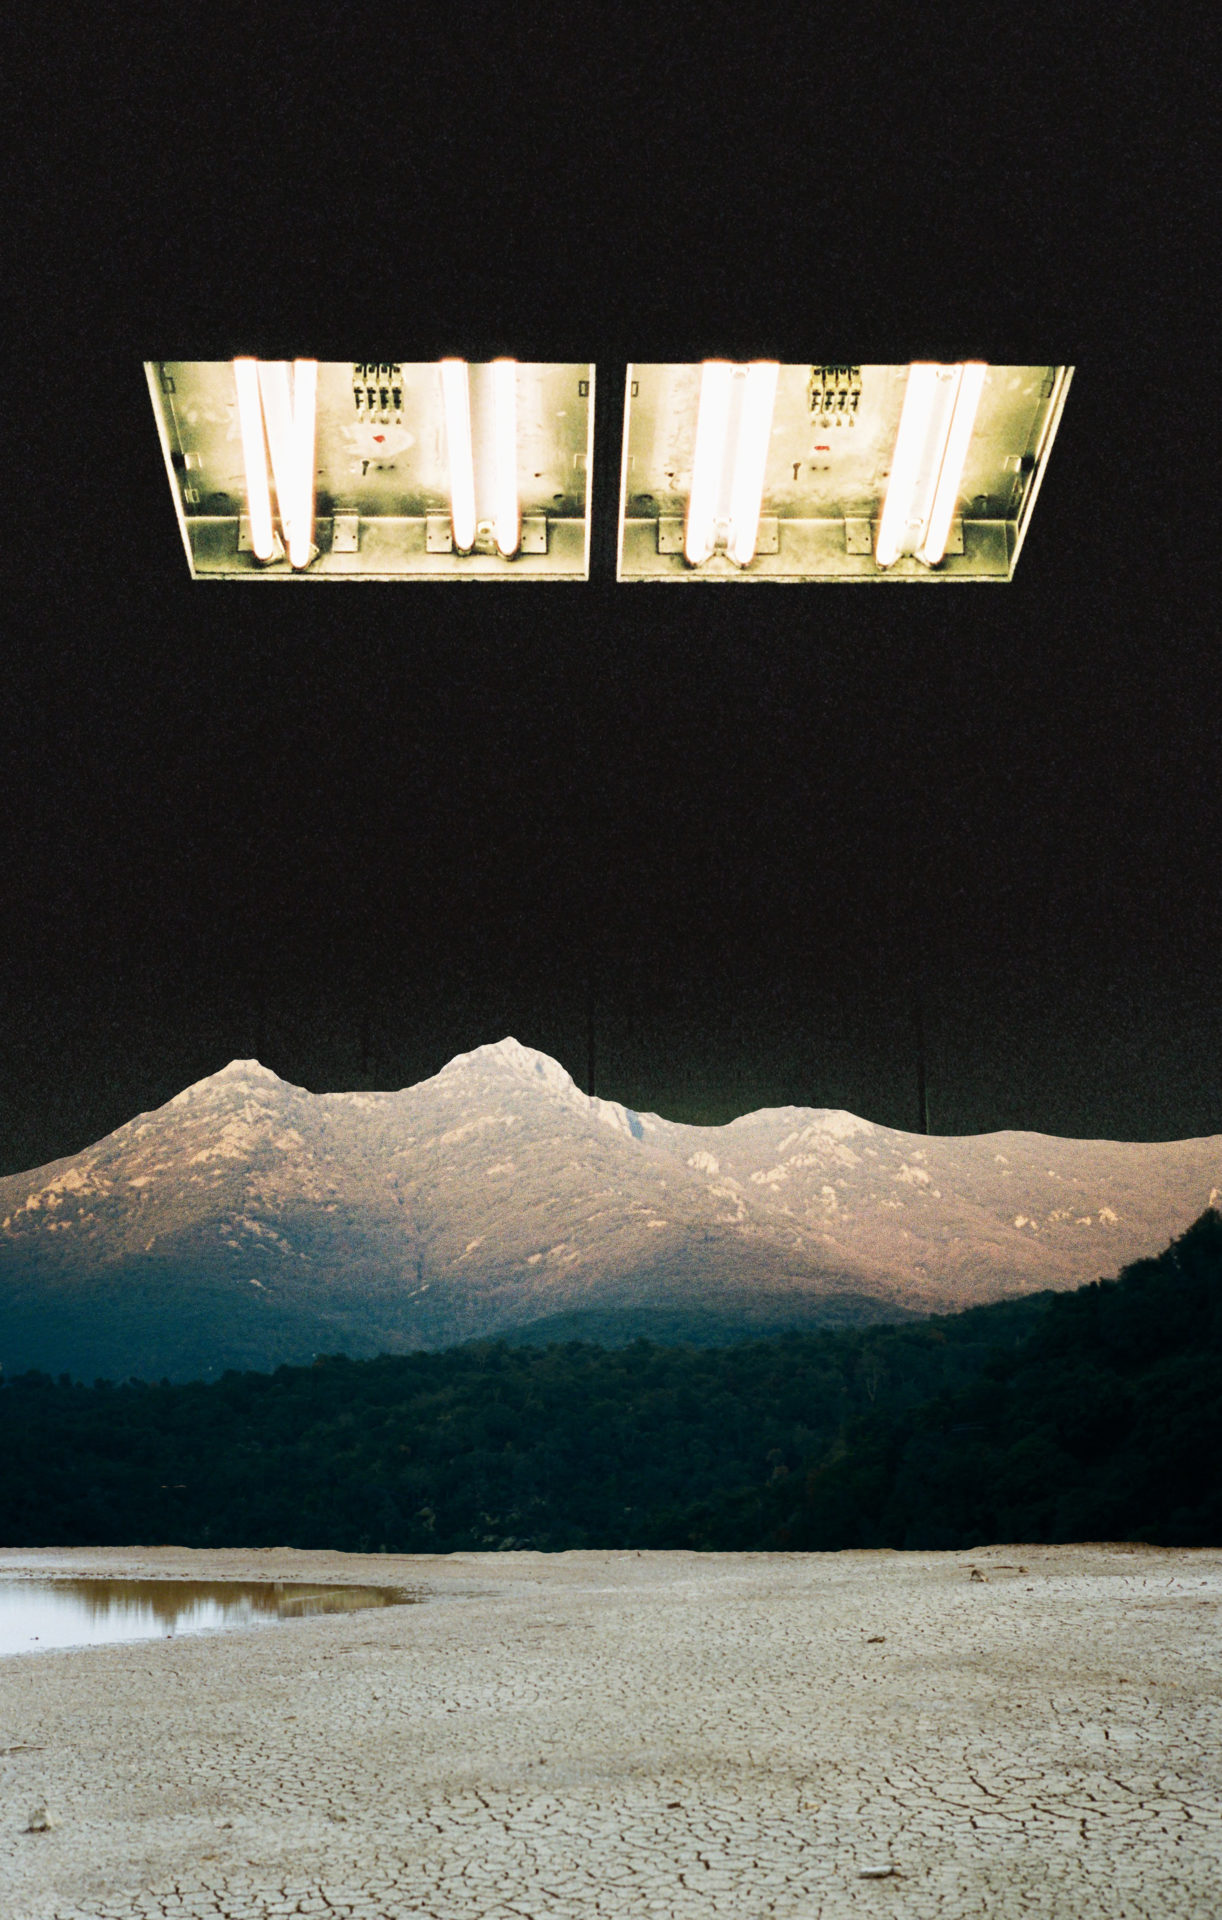 Neon lights, collage tirages argentique, impression sur papier velin, 70 x 110 cm, 2018, Collection privée